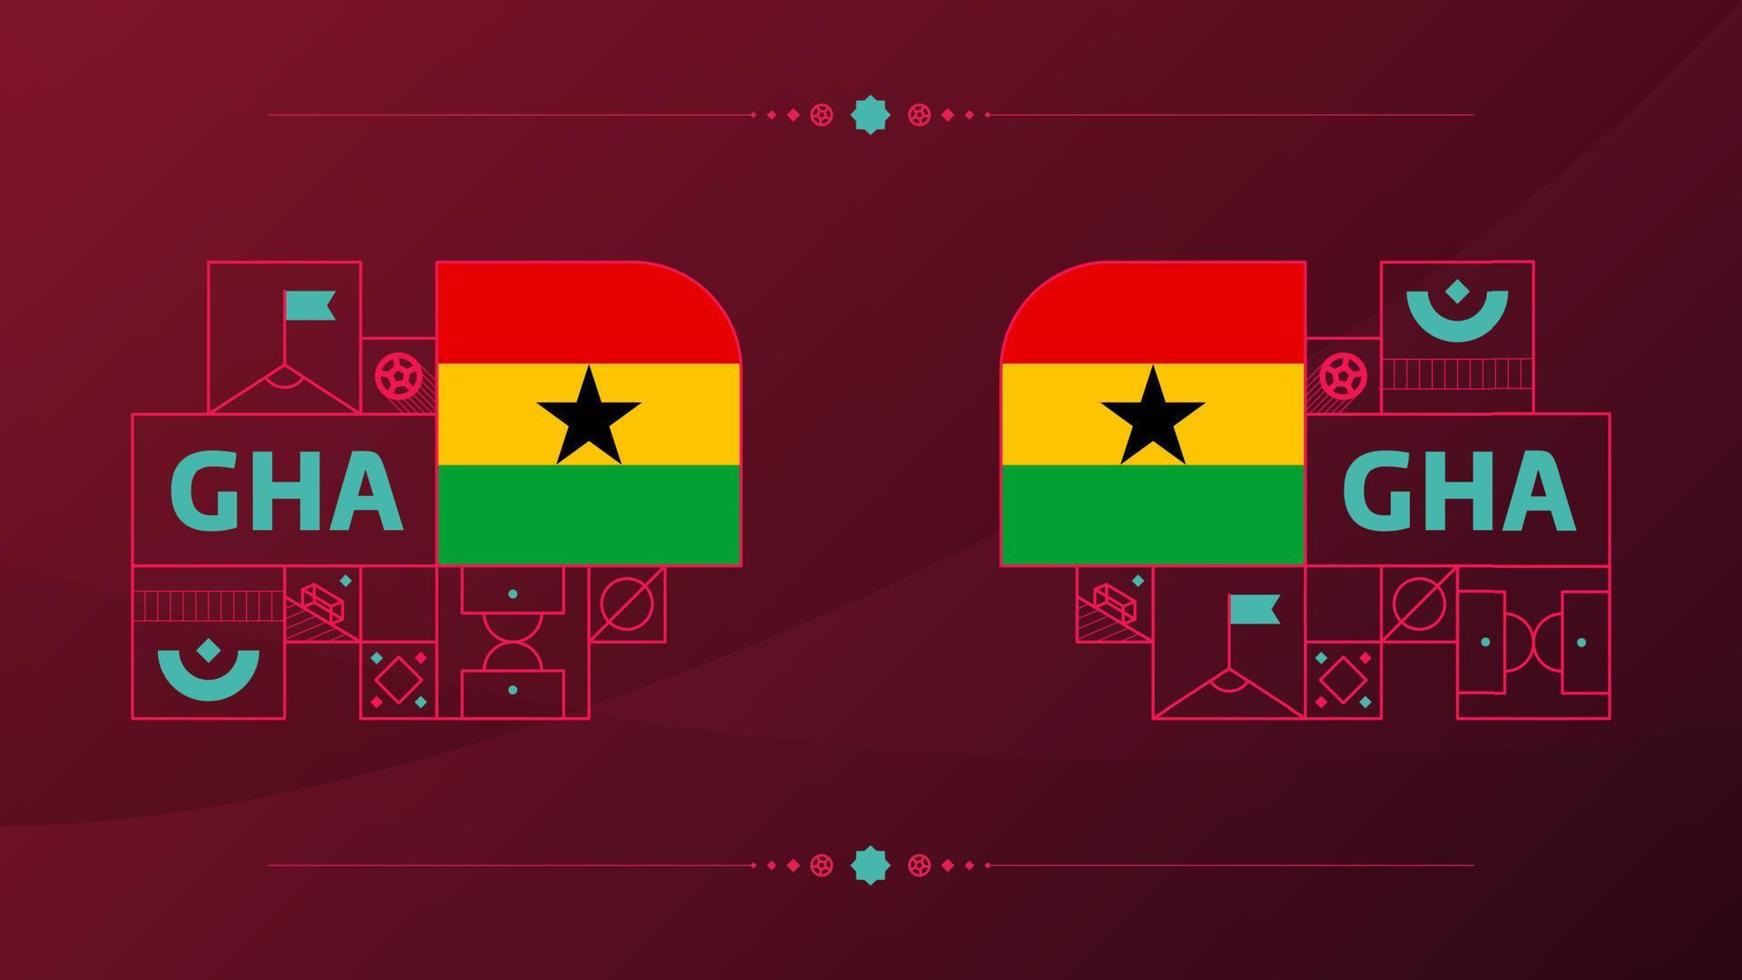 Bandera de Ghana para el torneo de la copa de fútbol de 2022. bandera del equipo nacional aislada con elementos geométricos para la ilustración de vector de fútbol o fútbol 2022